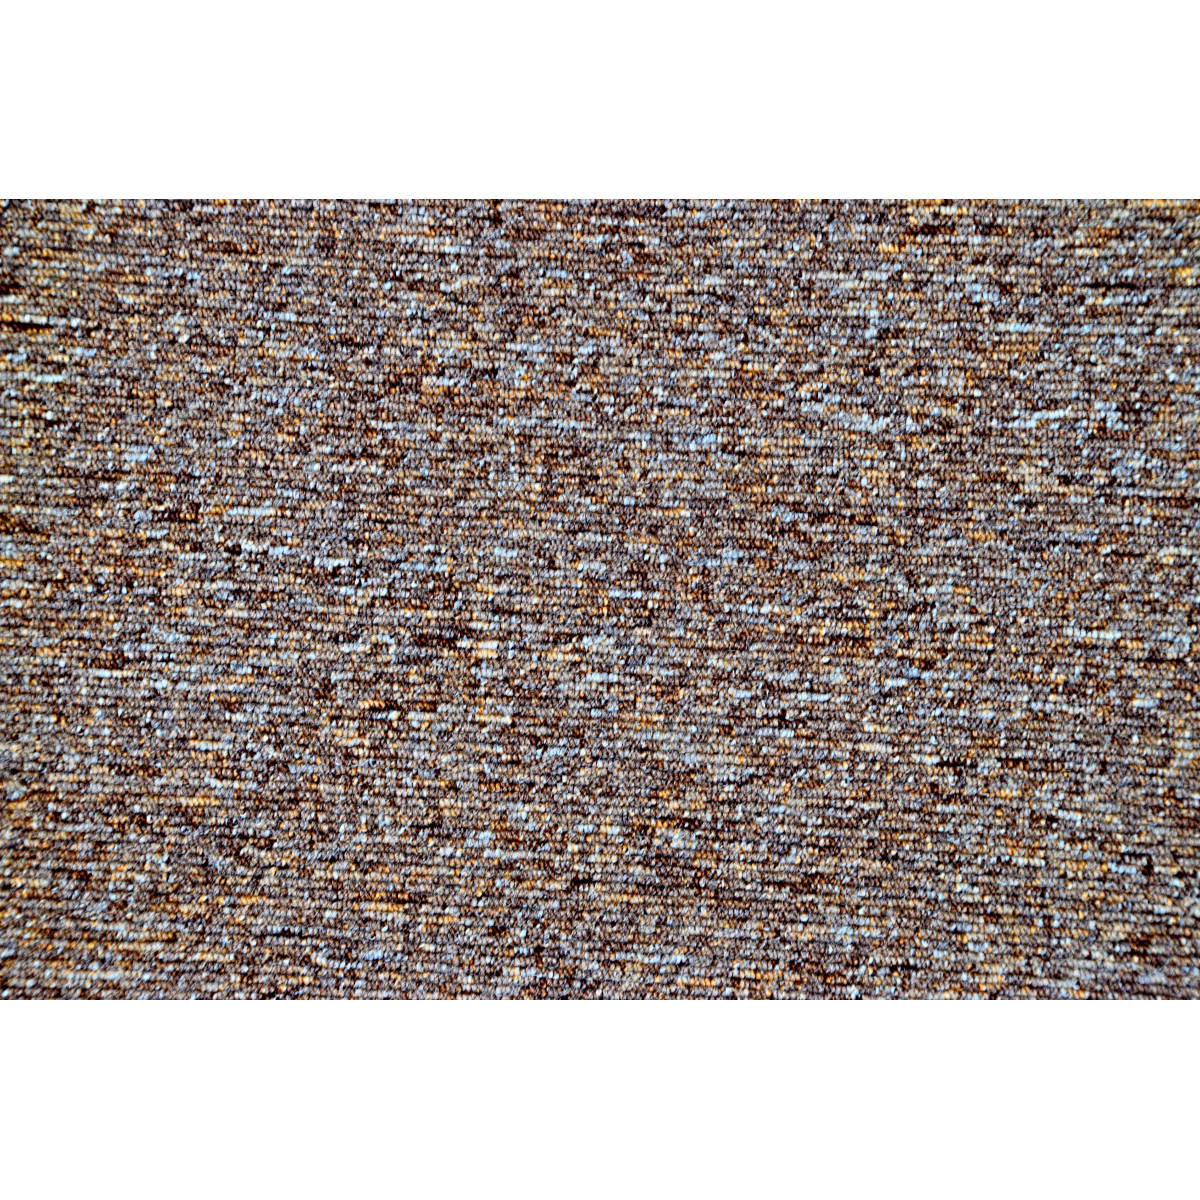 Metrážový koberec Mammut 8016 hnědý, zátěžový